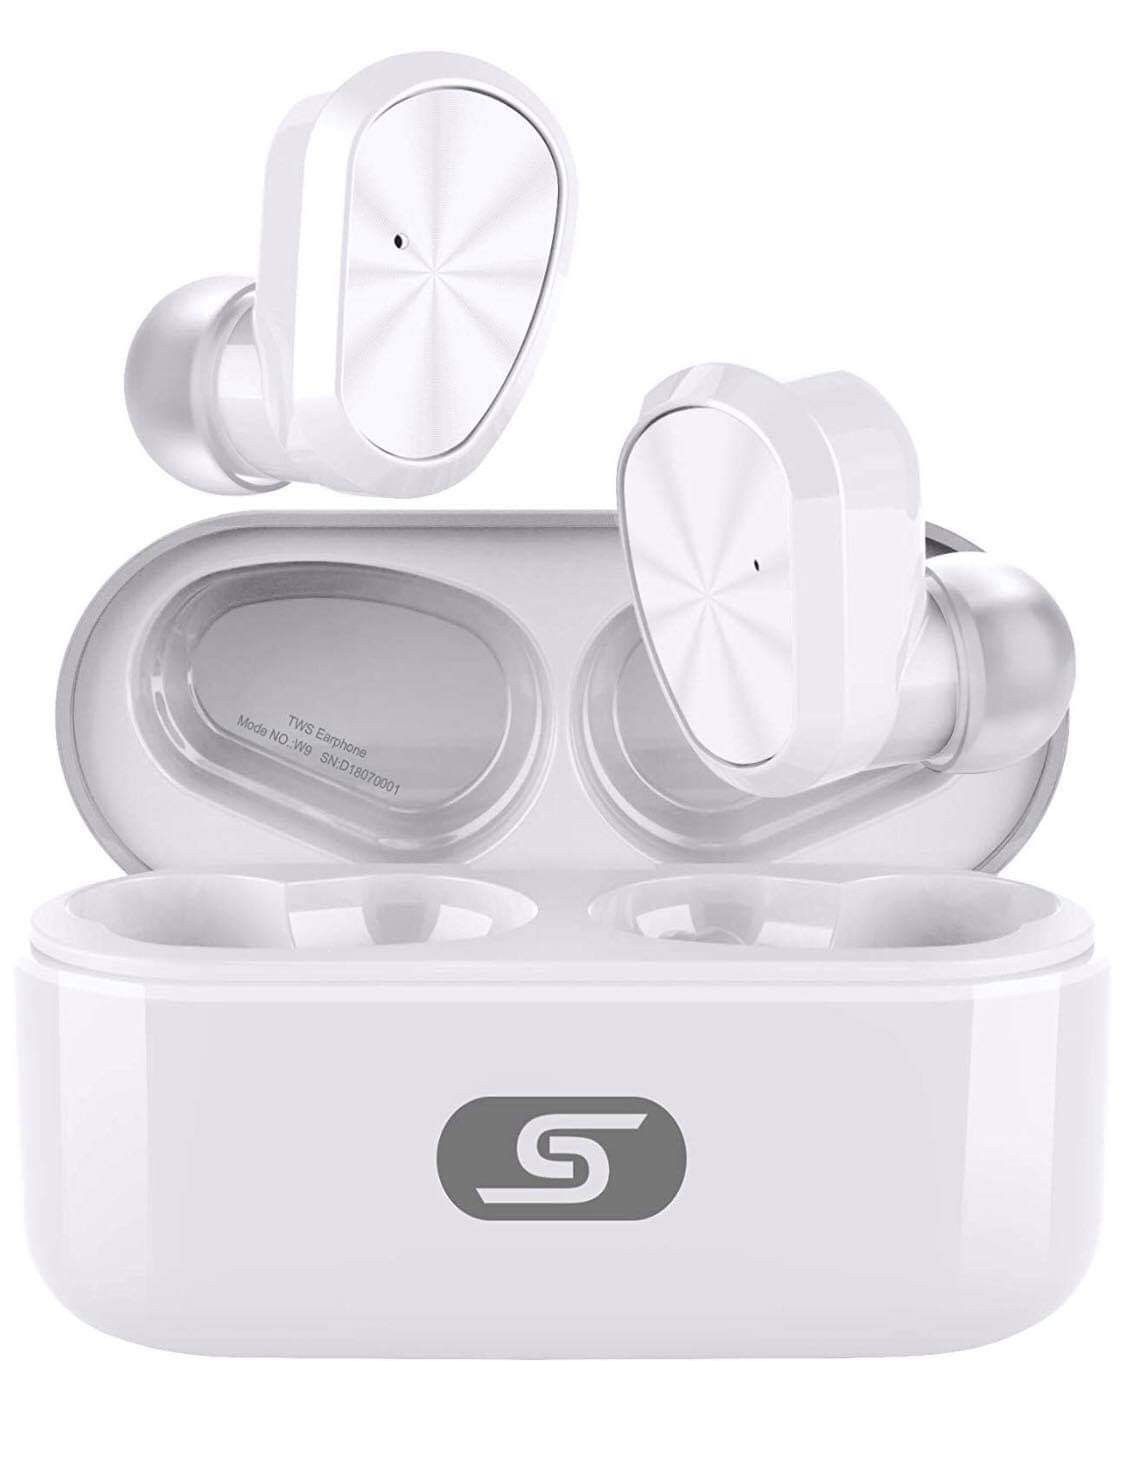 Brand New In Box True Bluetooth 5.0 Wireless Earbuds Headset W9 True Wireless Earphones for iPhone/Samsung IPX7 Waterproof Smart